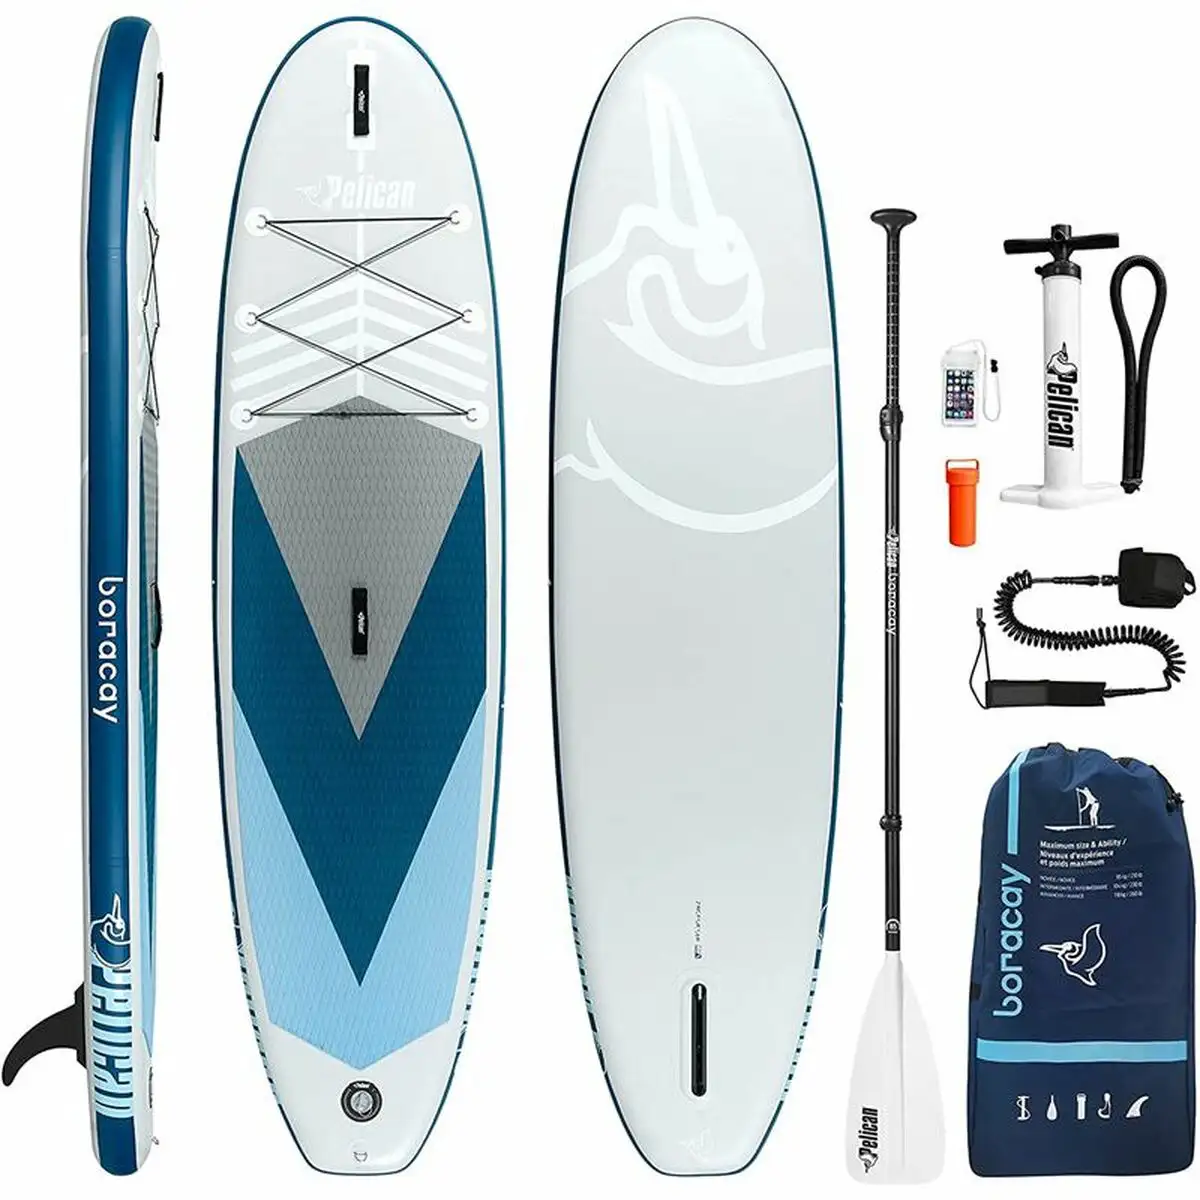 Planche de paddle surf gonflable avec accessoires boracay bleu_1004. Bienvenue sur DIAYTAR SENEGAL - Où Choisir est un Voyage Sensoriel. Plongez dans notre catalogue et trouvez des produits qui éveillent vos sens et embellissent votre quotidien.